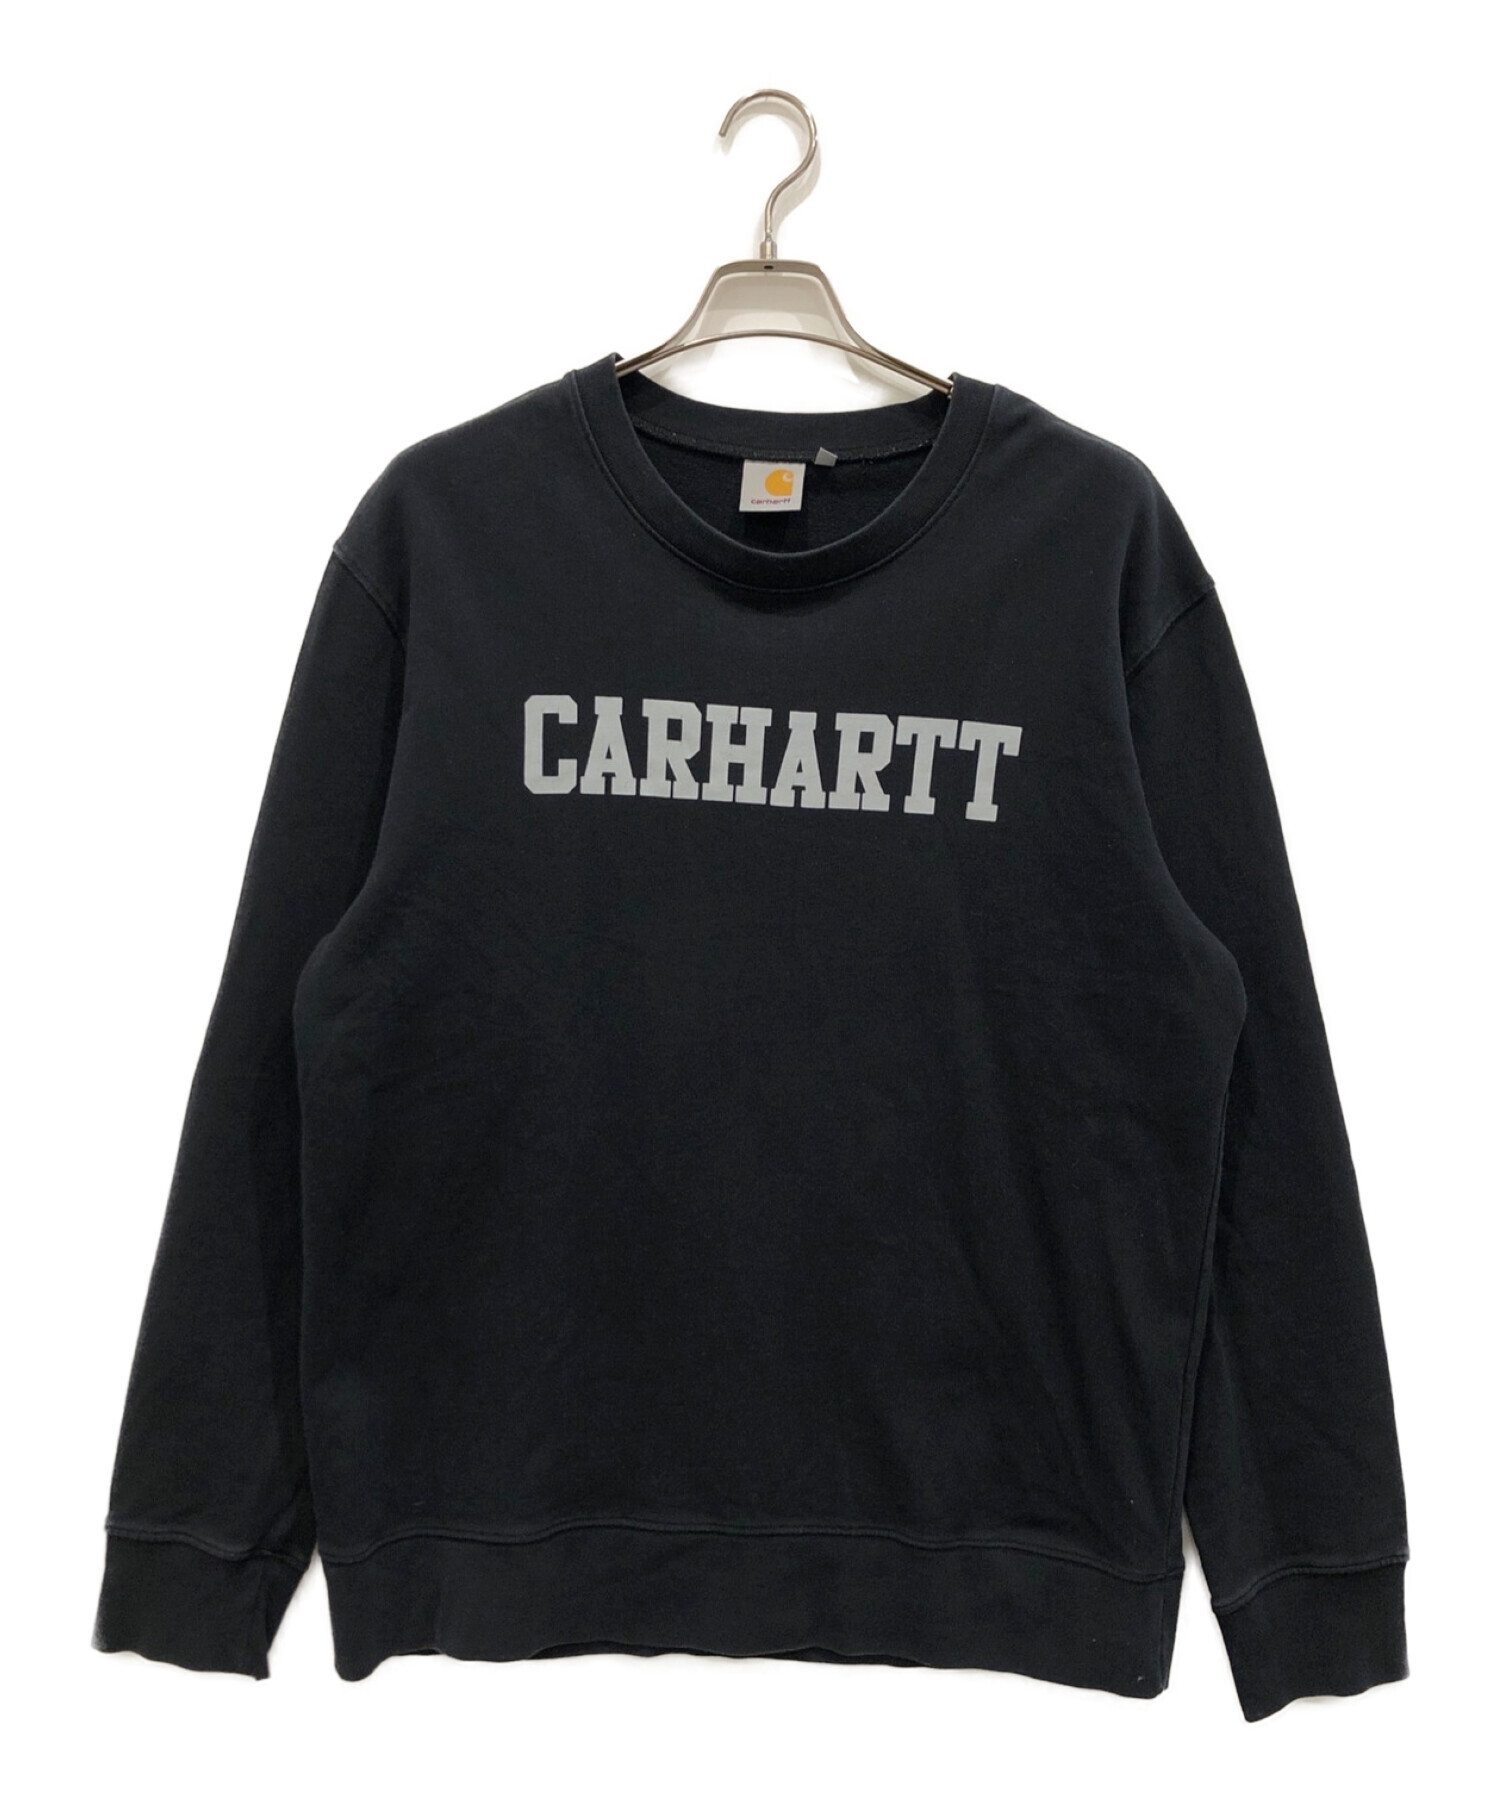 CarHartt (カーハート) カレッジスウェット ブラック サイズ:L